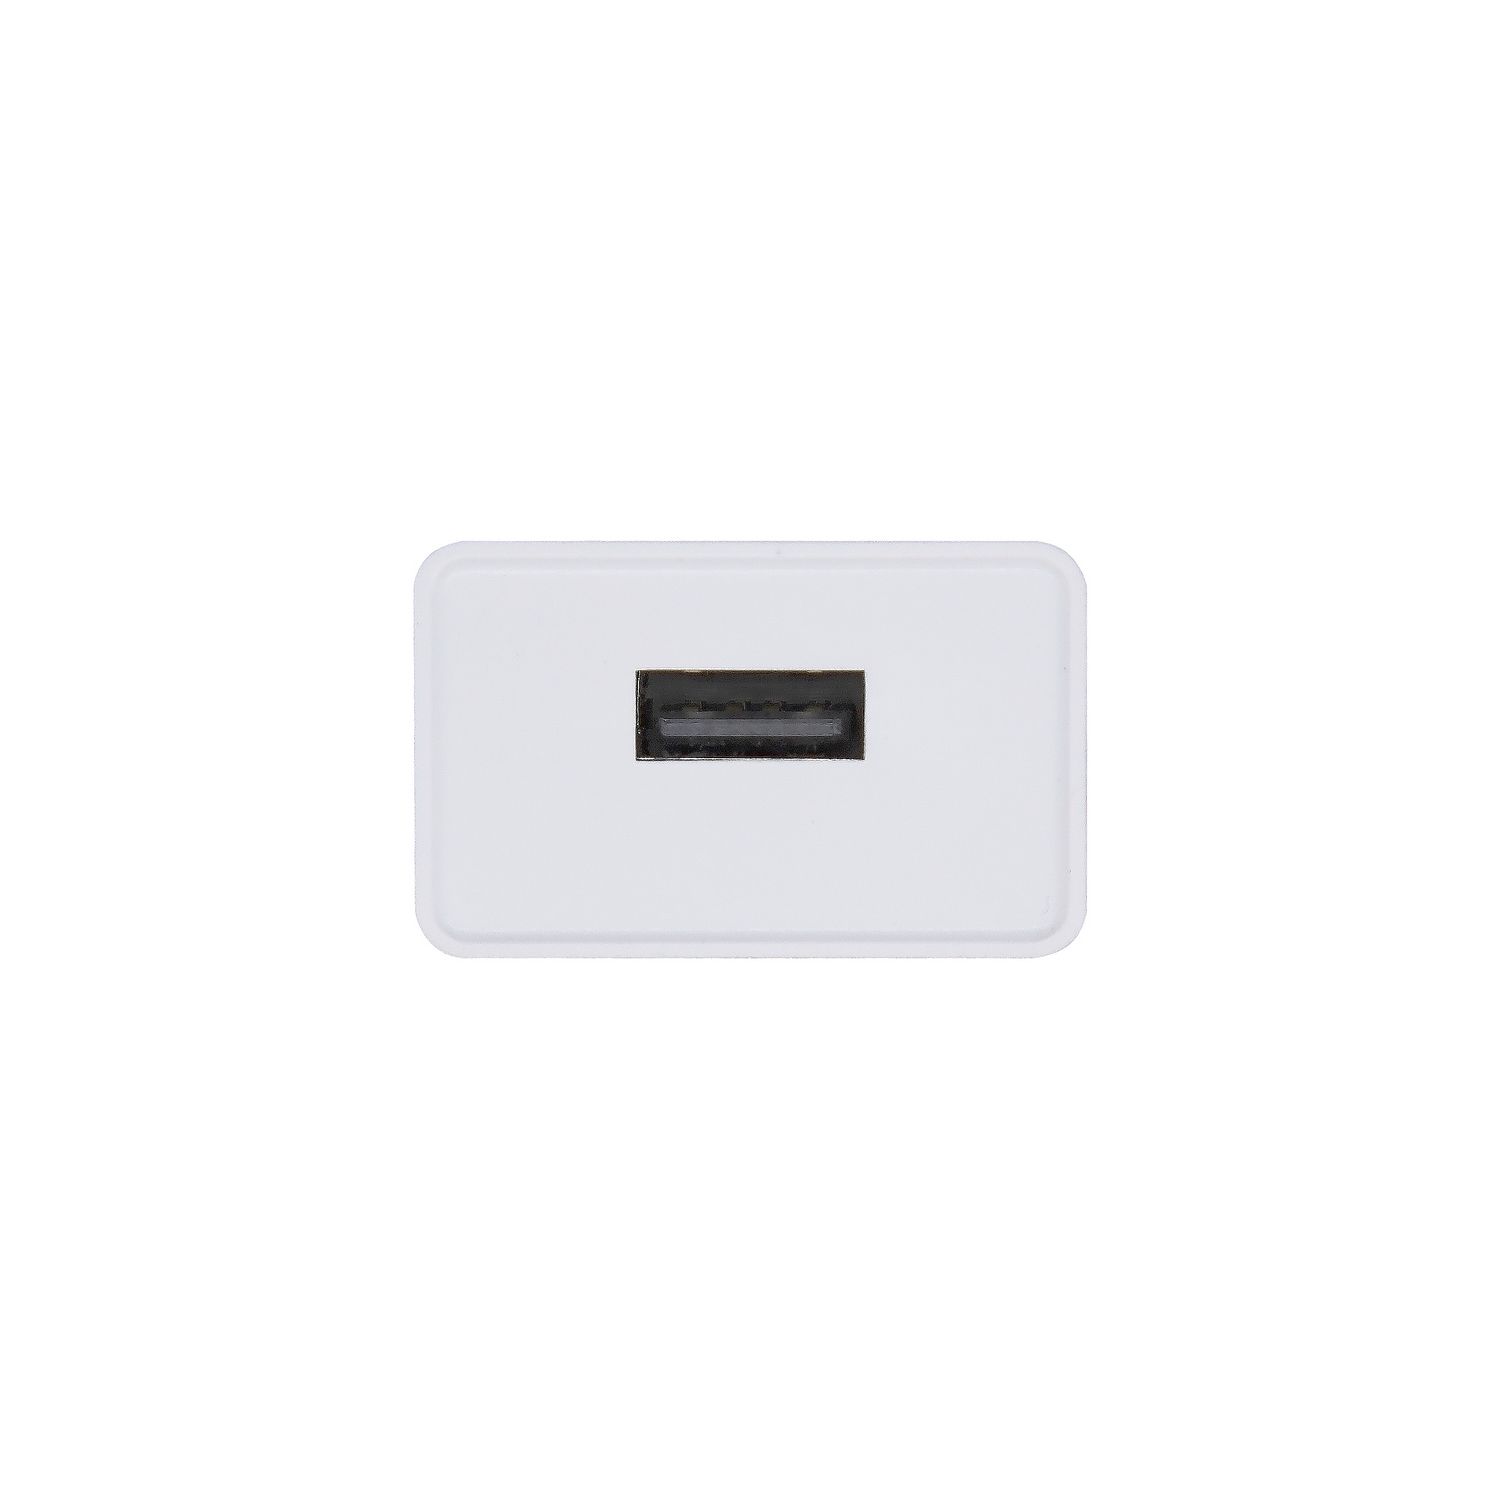 A110-0404 - Cargador de Pared AISENS Cmara Digital Smartphone Tablet 10W 1xUSB 2.0 Blanco (A110-0404)